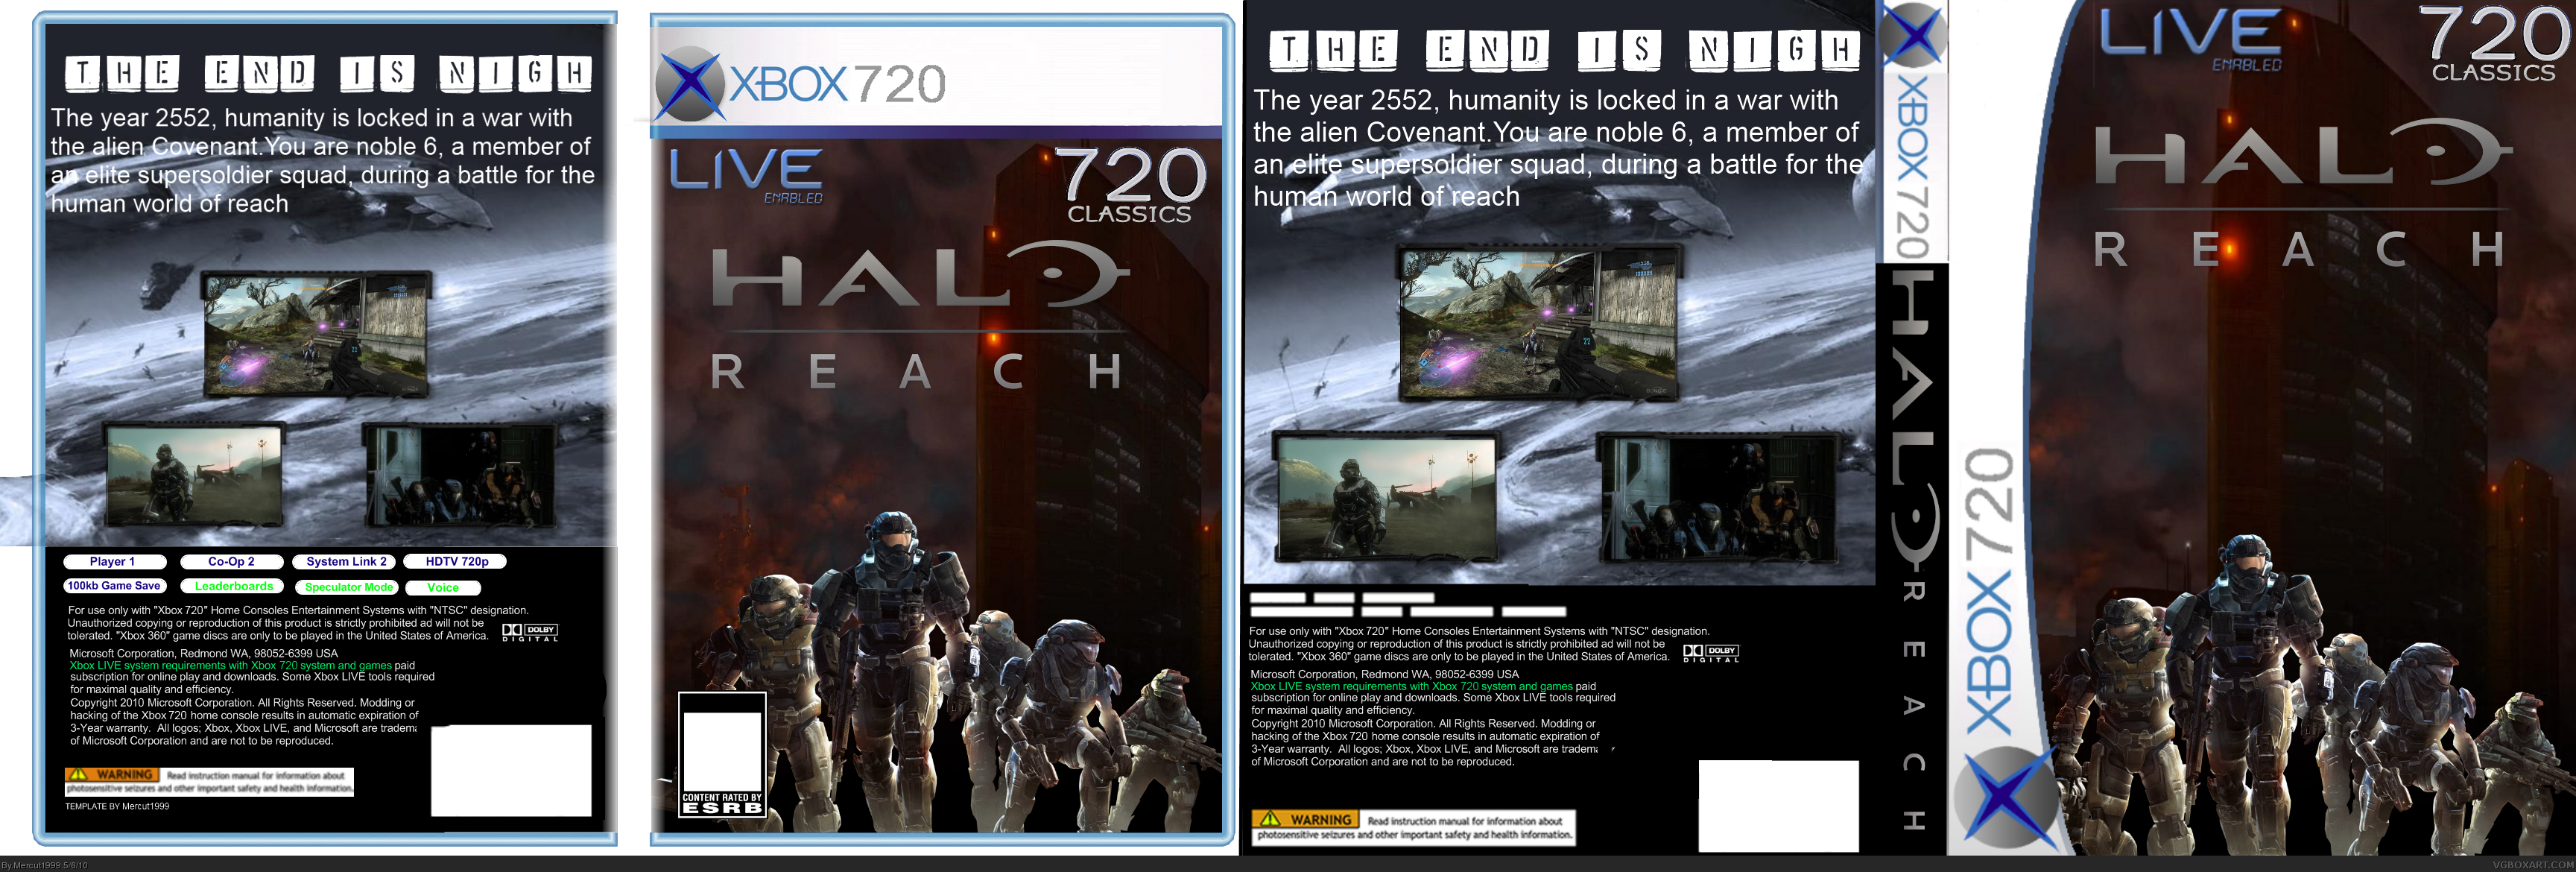 (720) Halo Reach box cover